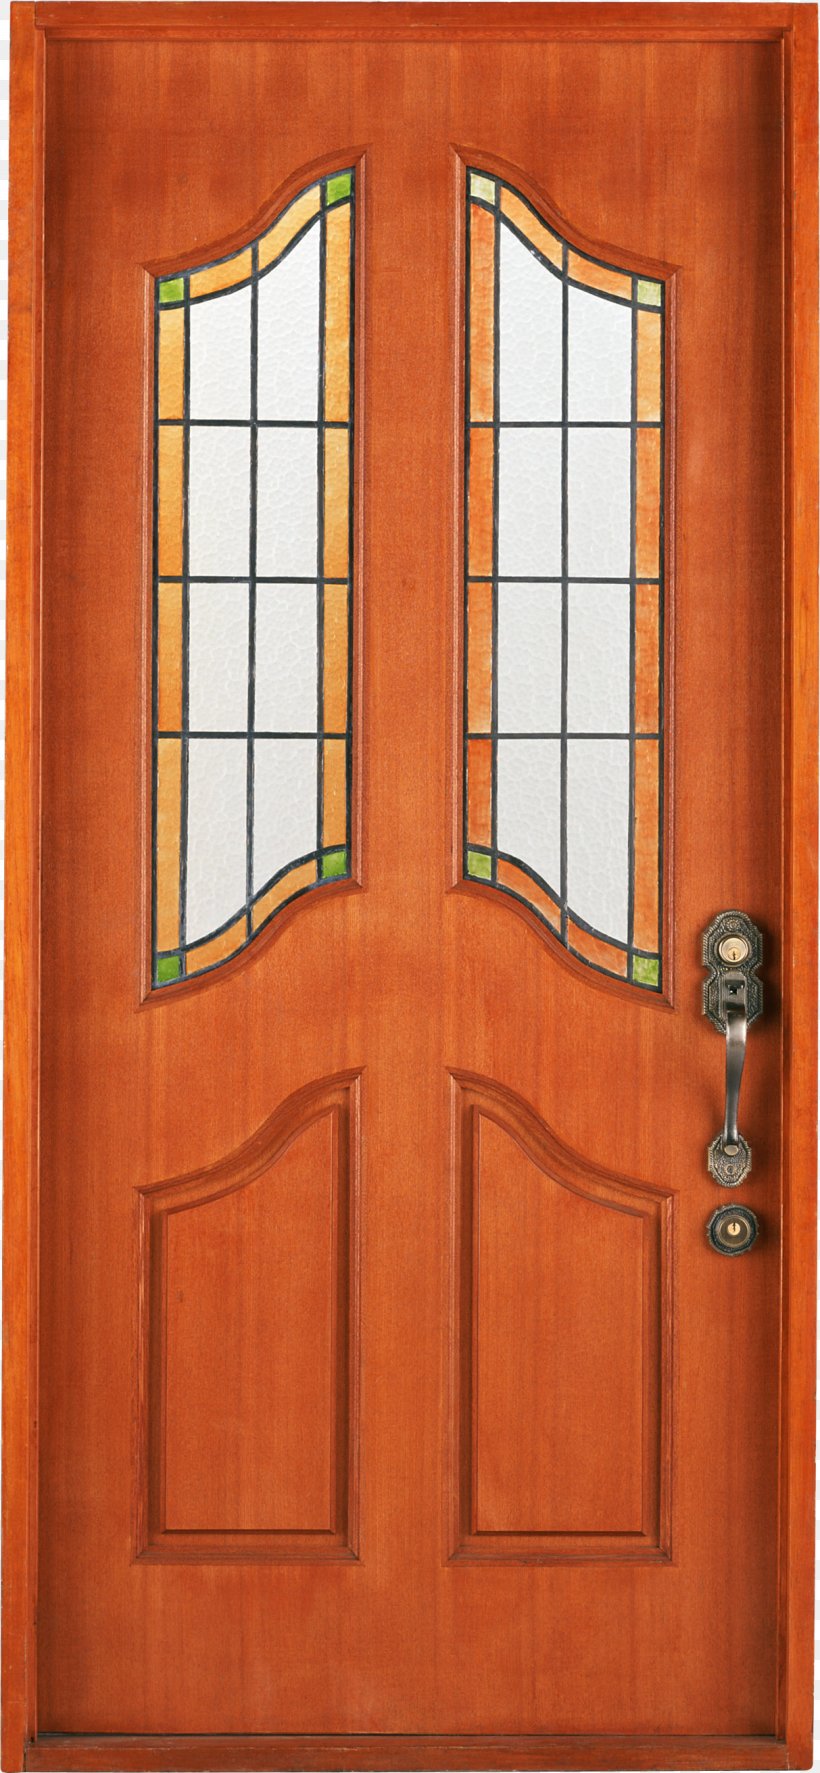 Window Door Clip Art, PNG, 1213x2623px, Door, Digital Image, Hardwood, Image File Formats, Rar Download Free